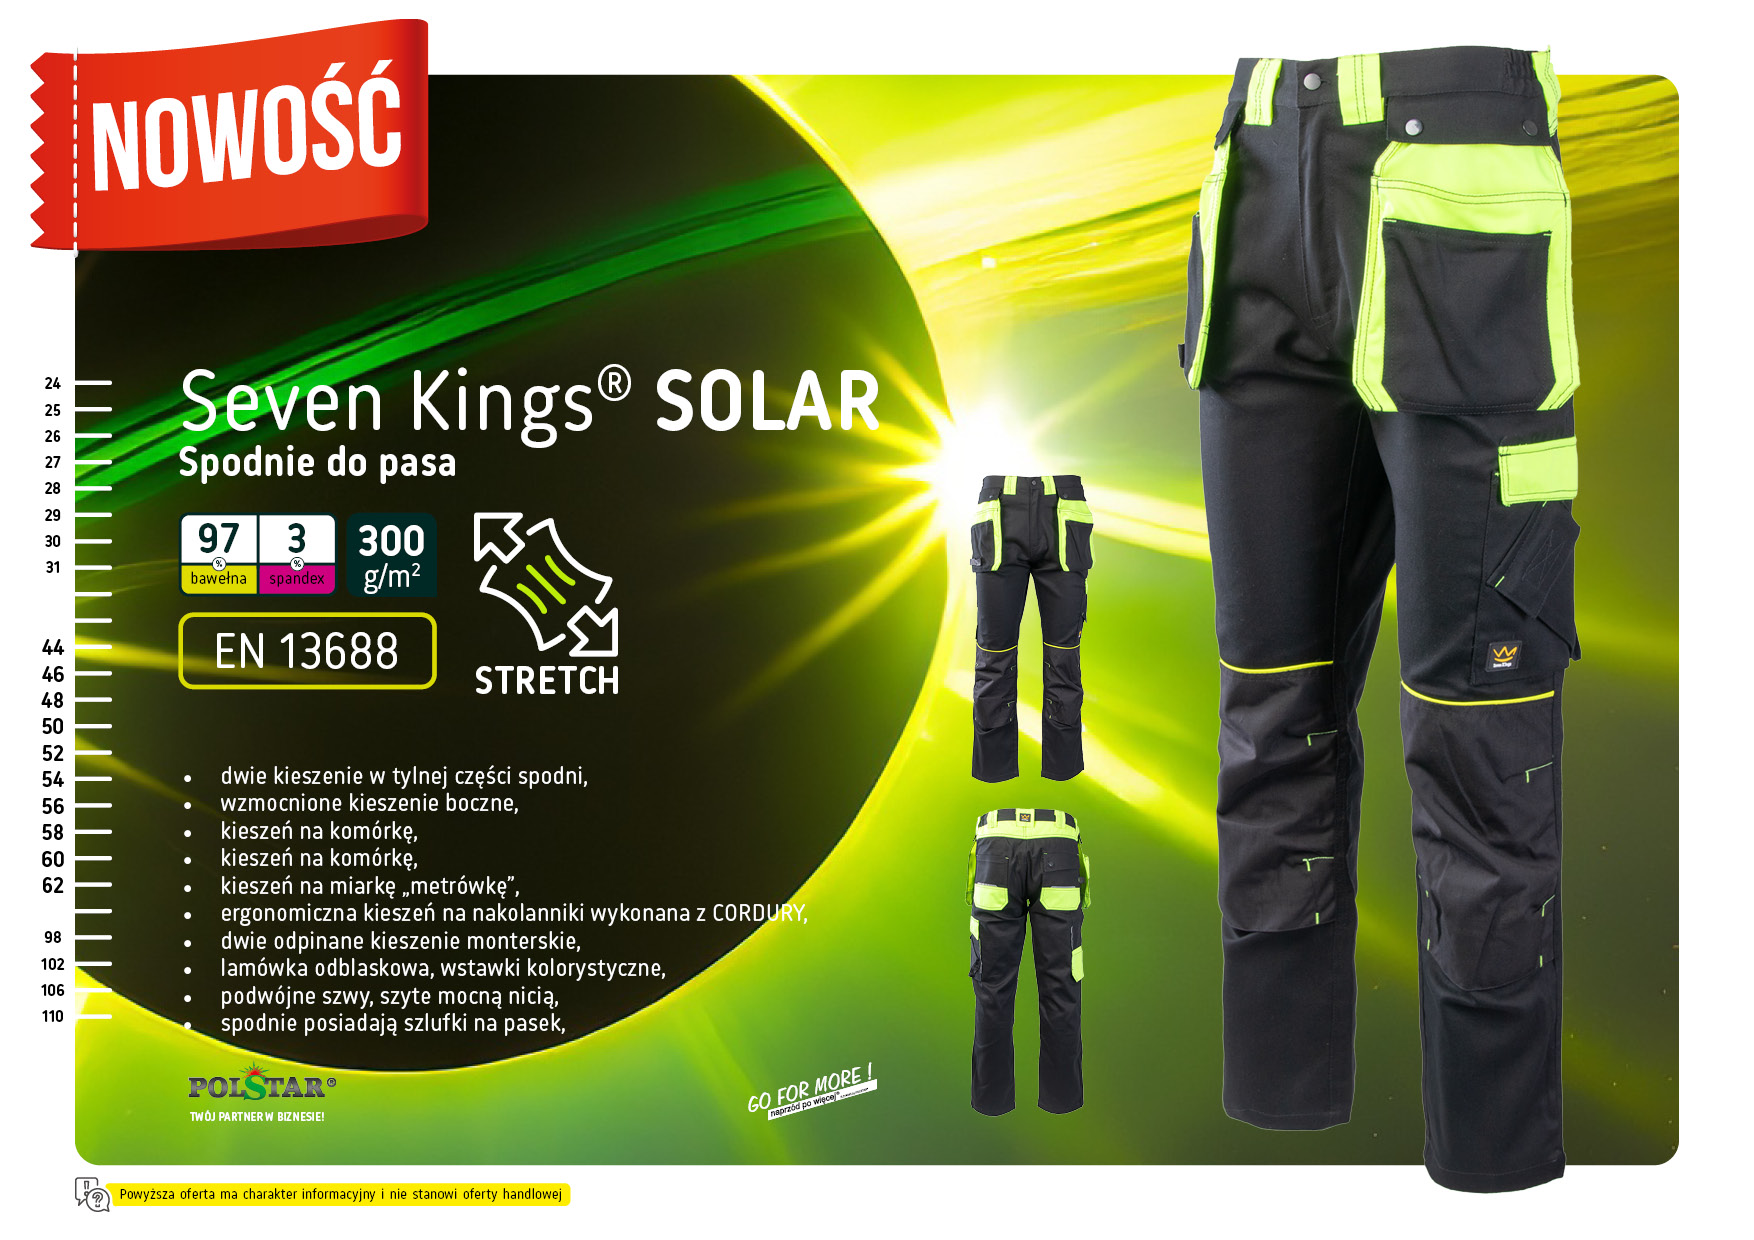 Seven Kings Solar